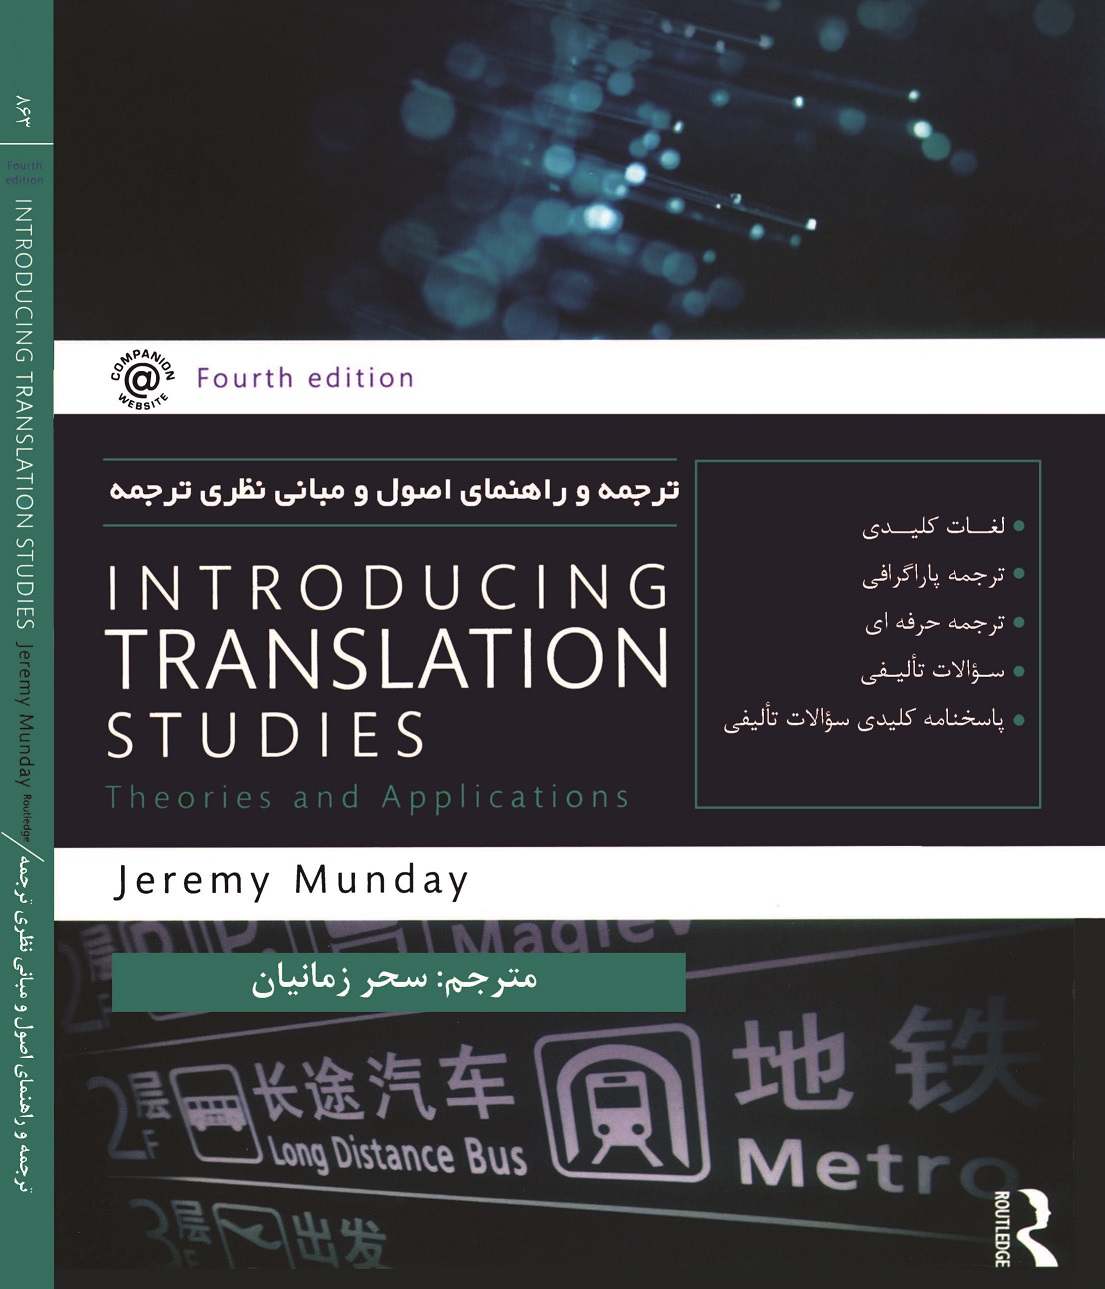 ترجمه و راهنمای اصول و مبانی نظری ترجمه ( Introducing Translation Studies)